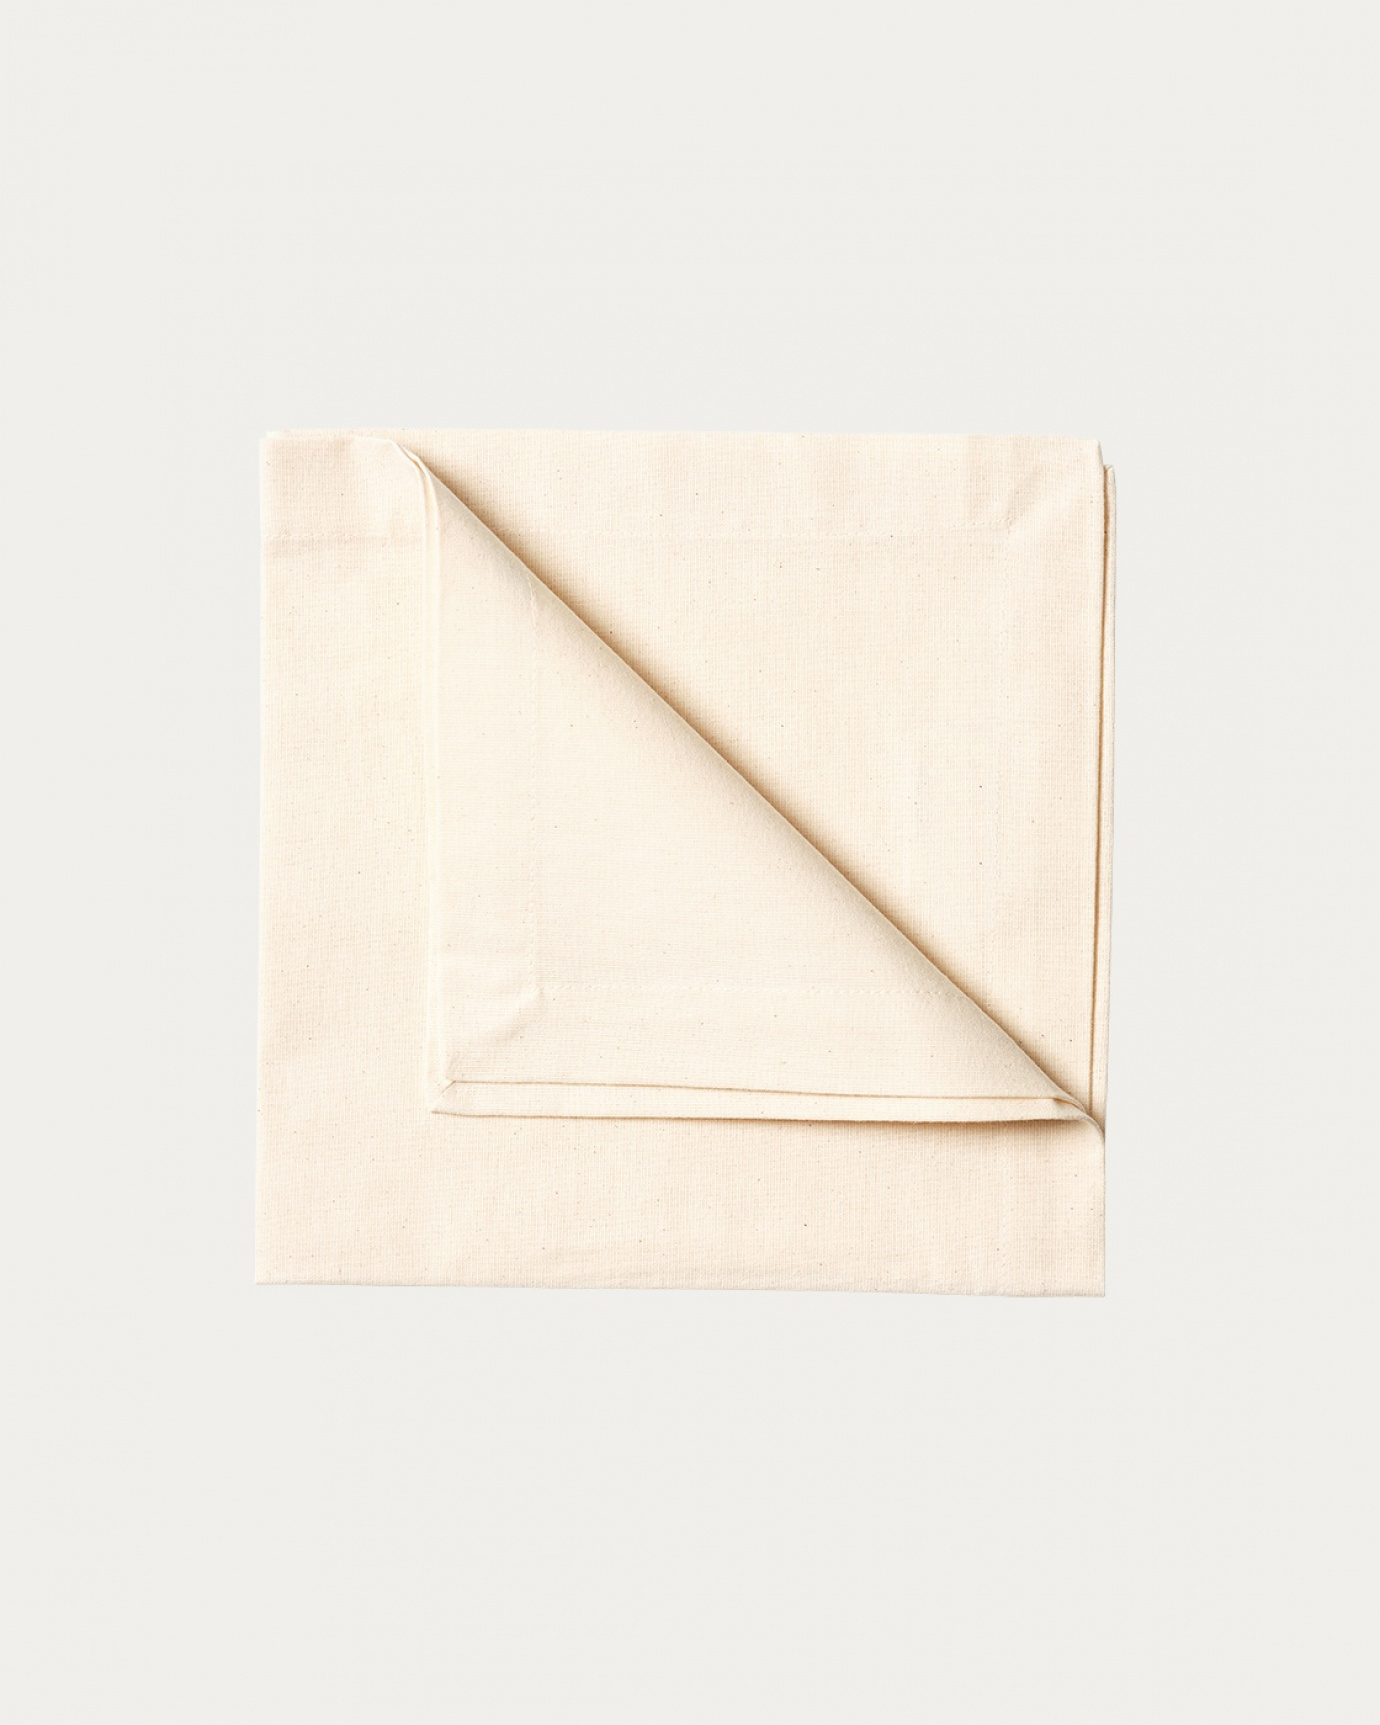 Image du produit serviette de table ROBERT ecru en coton doux de LINUM DESIGN. Taille 45 x 45 cm et vendu en lot de 4.